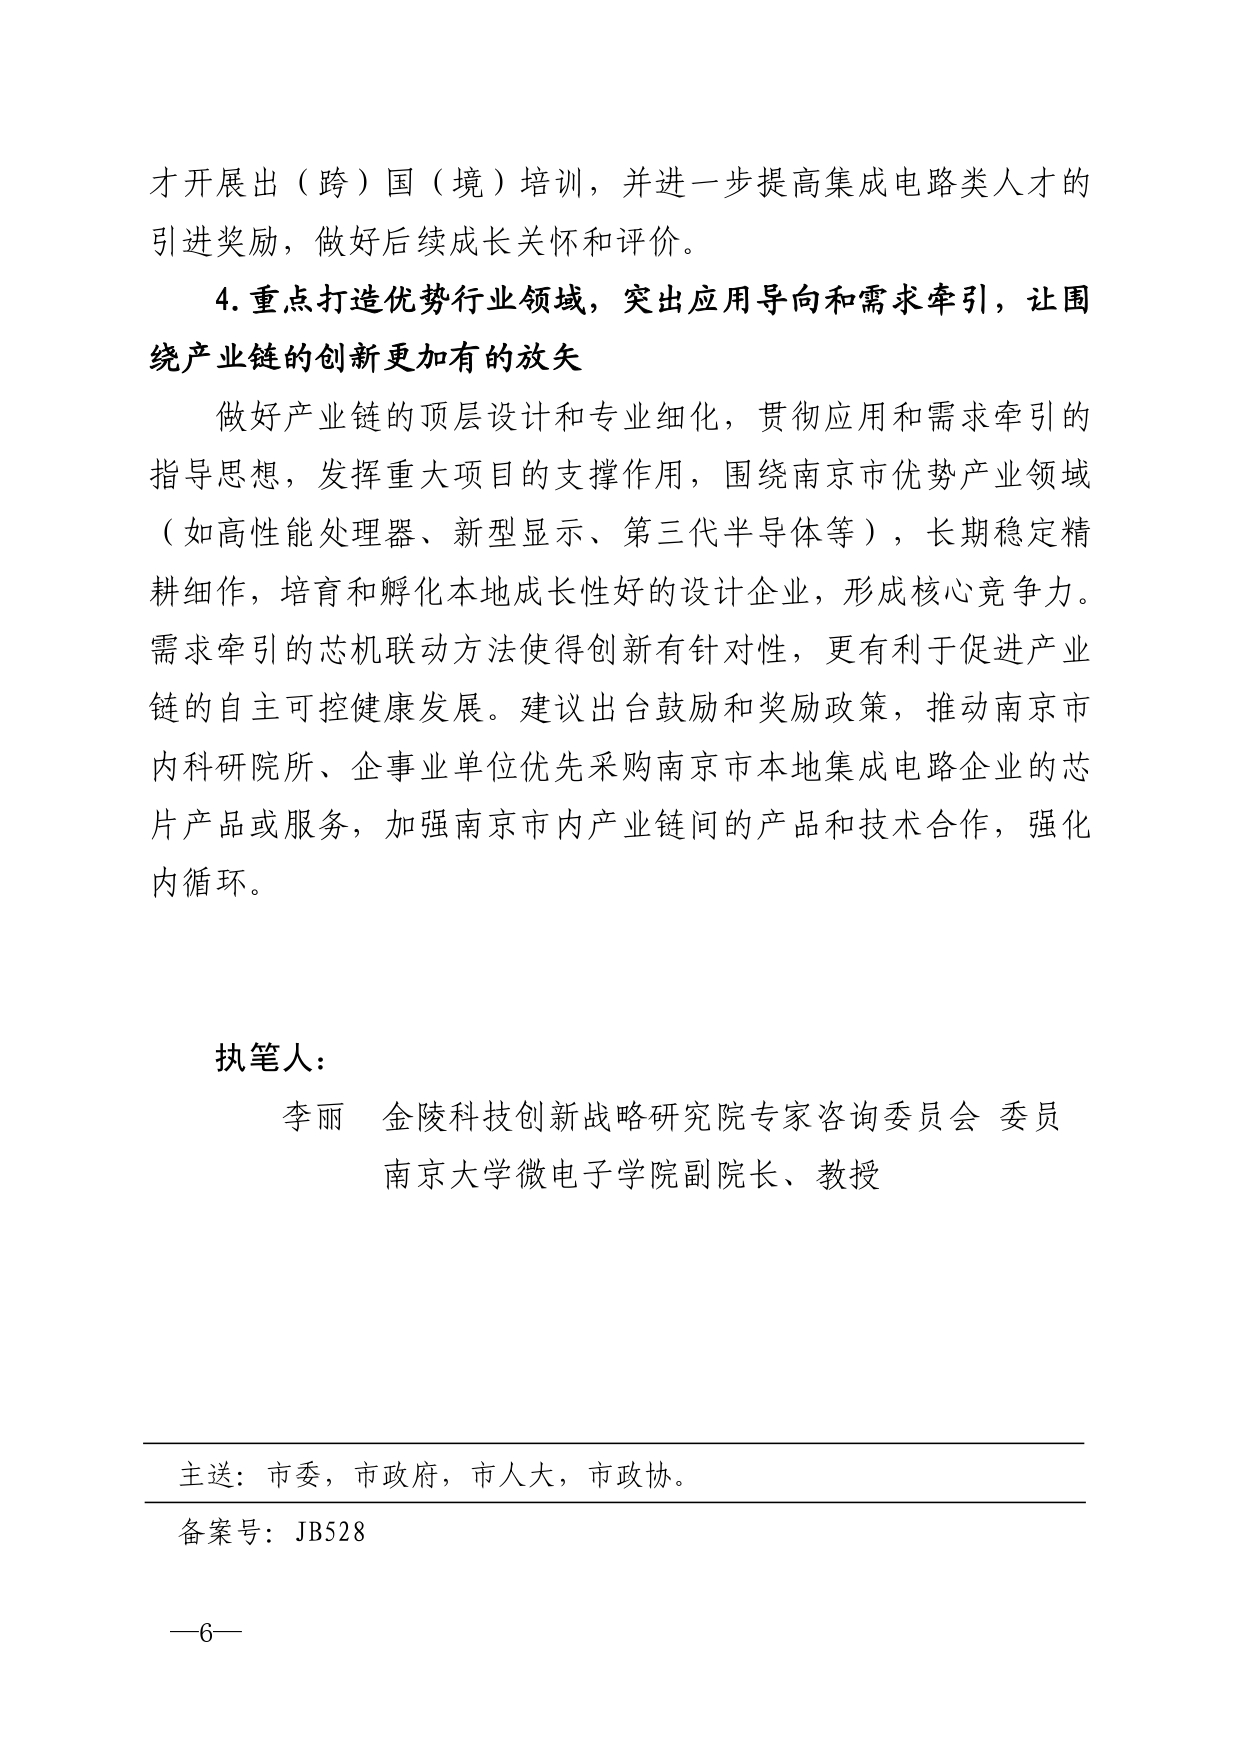 2021年第5期（关于南京市集成电路产业链高质量发展的建议）_page-0006.jpg